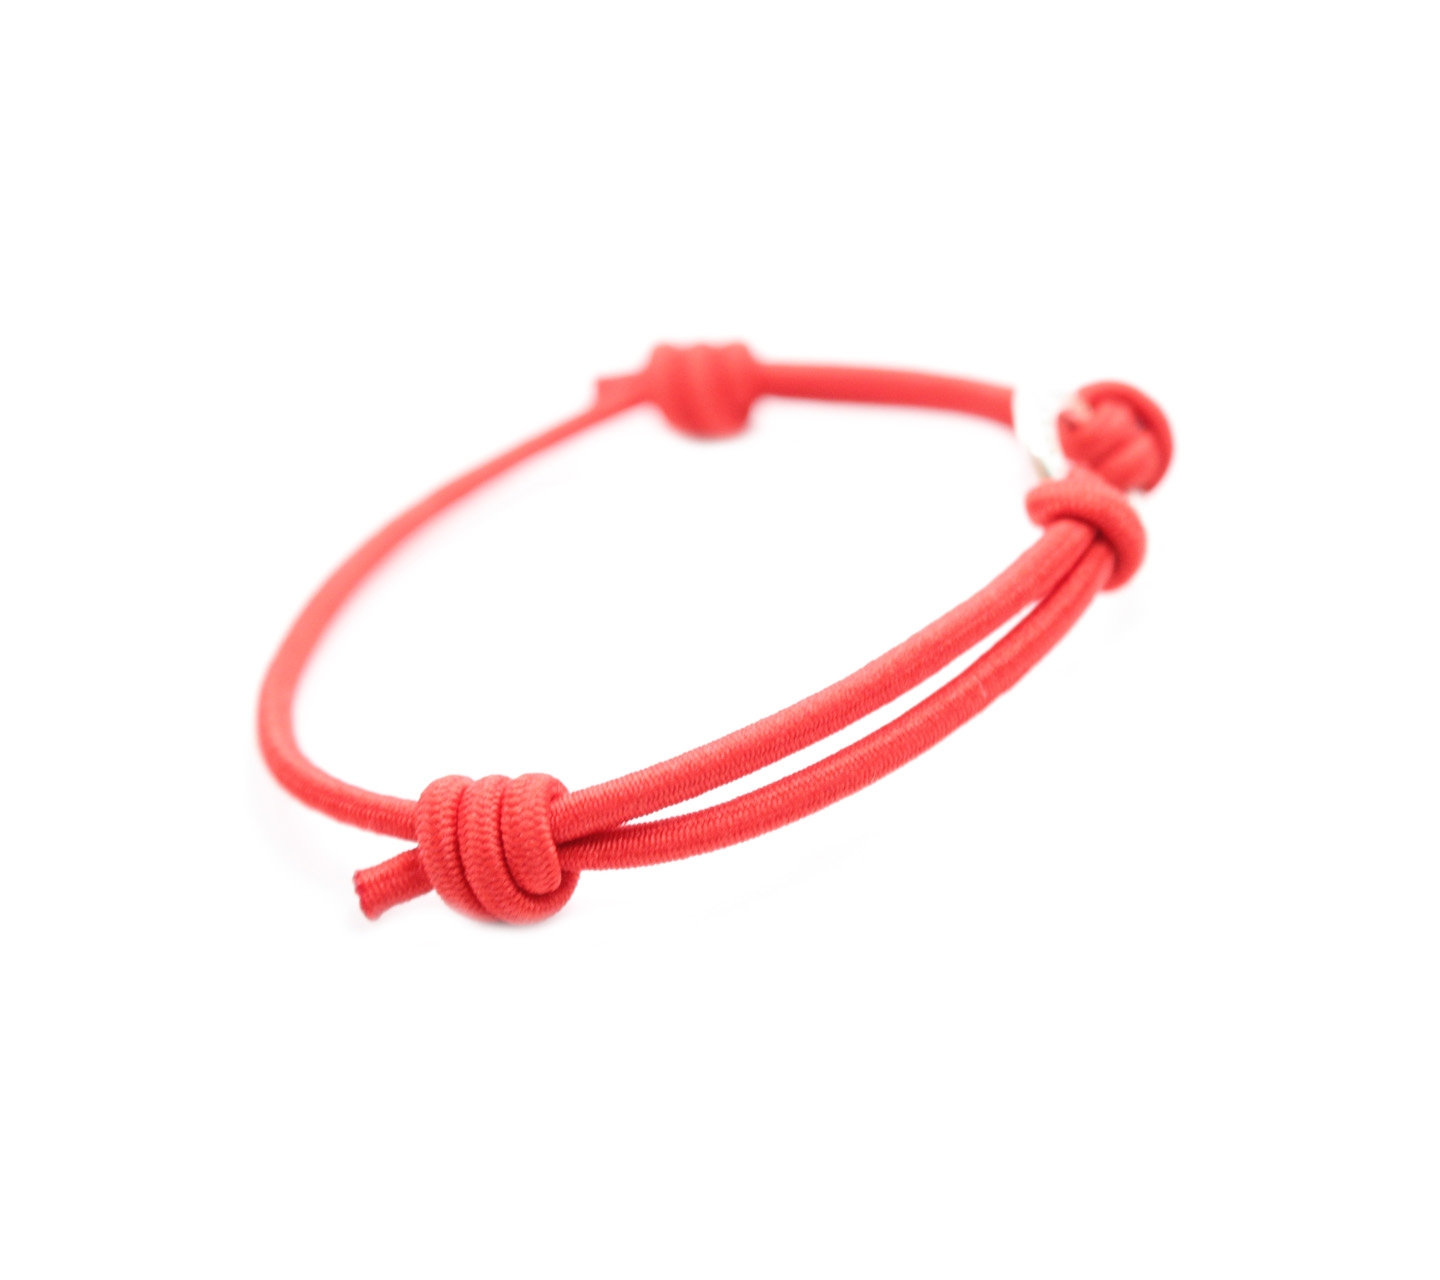 Thomas Sabo Charm Red Strap Bracelet Jewelry